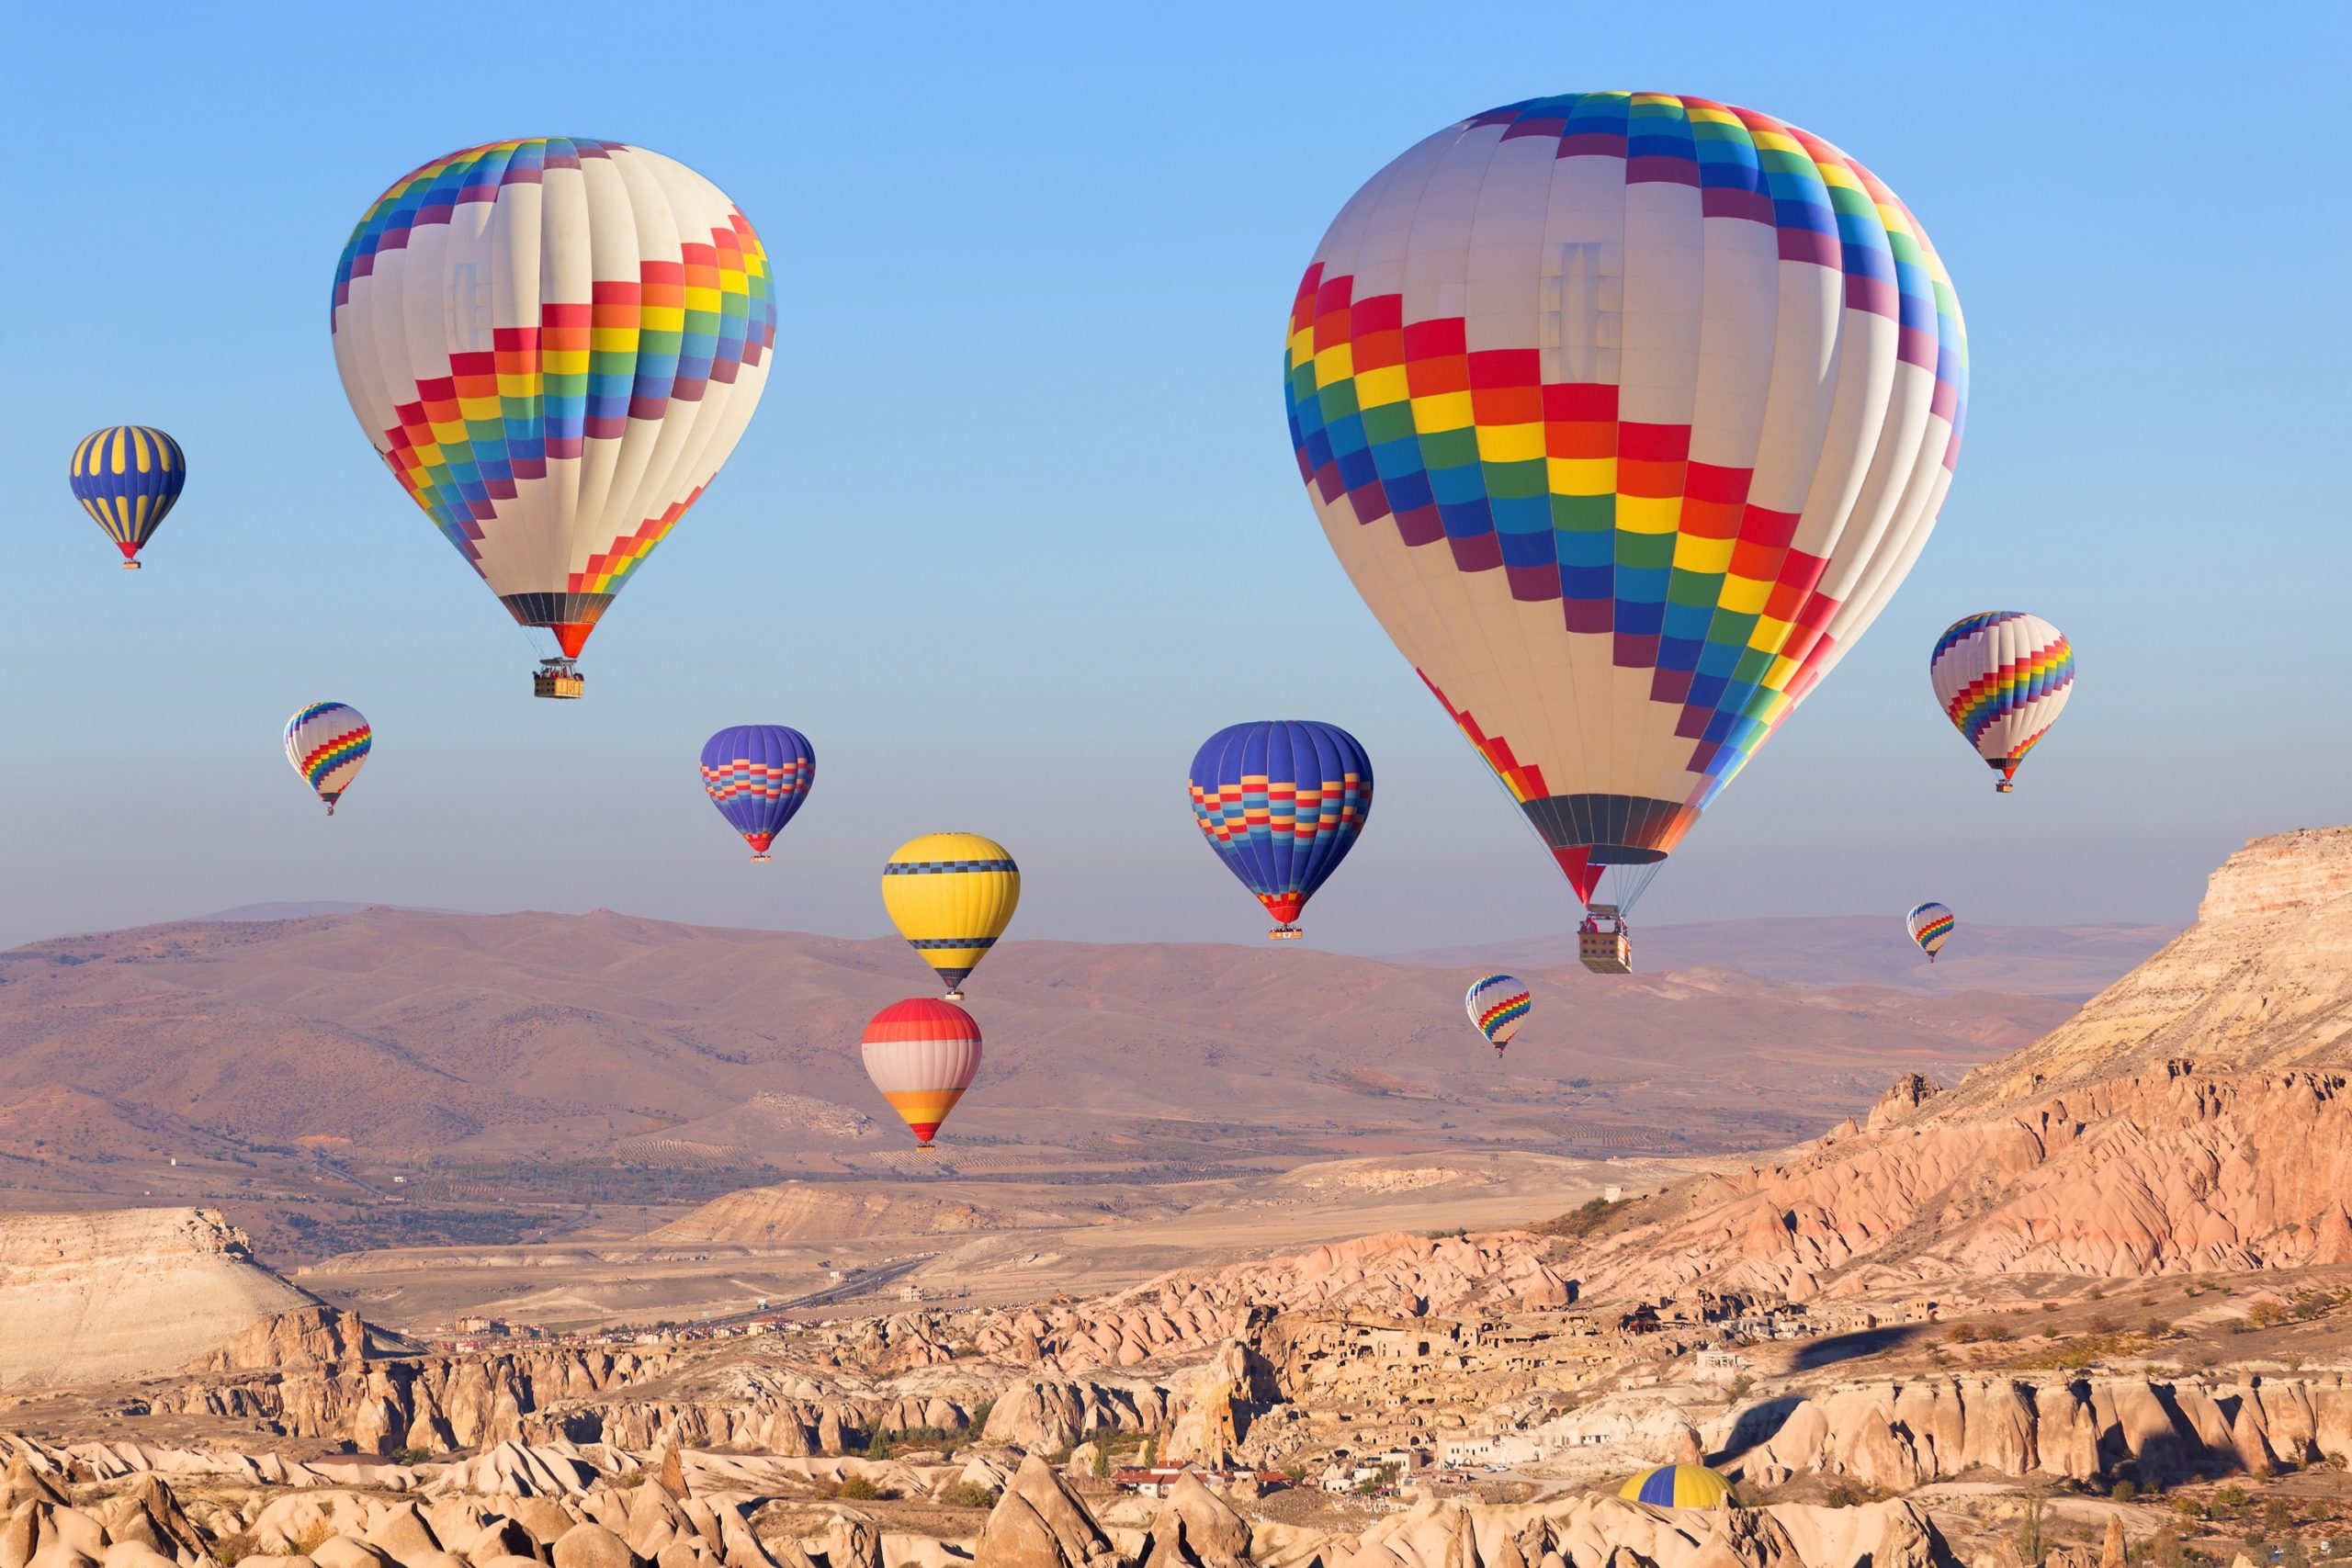 cappadocia sunrise balloon tour